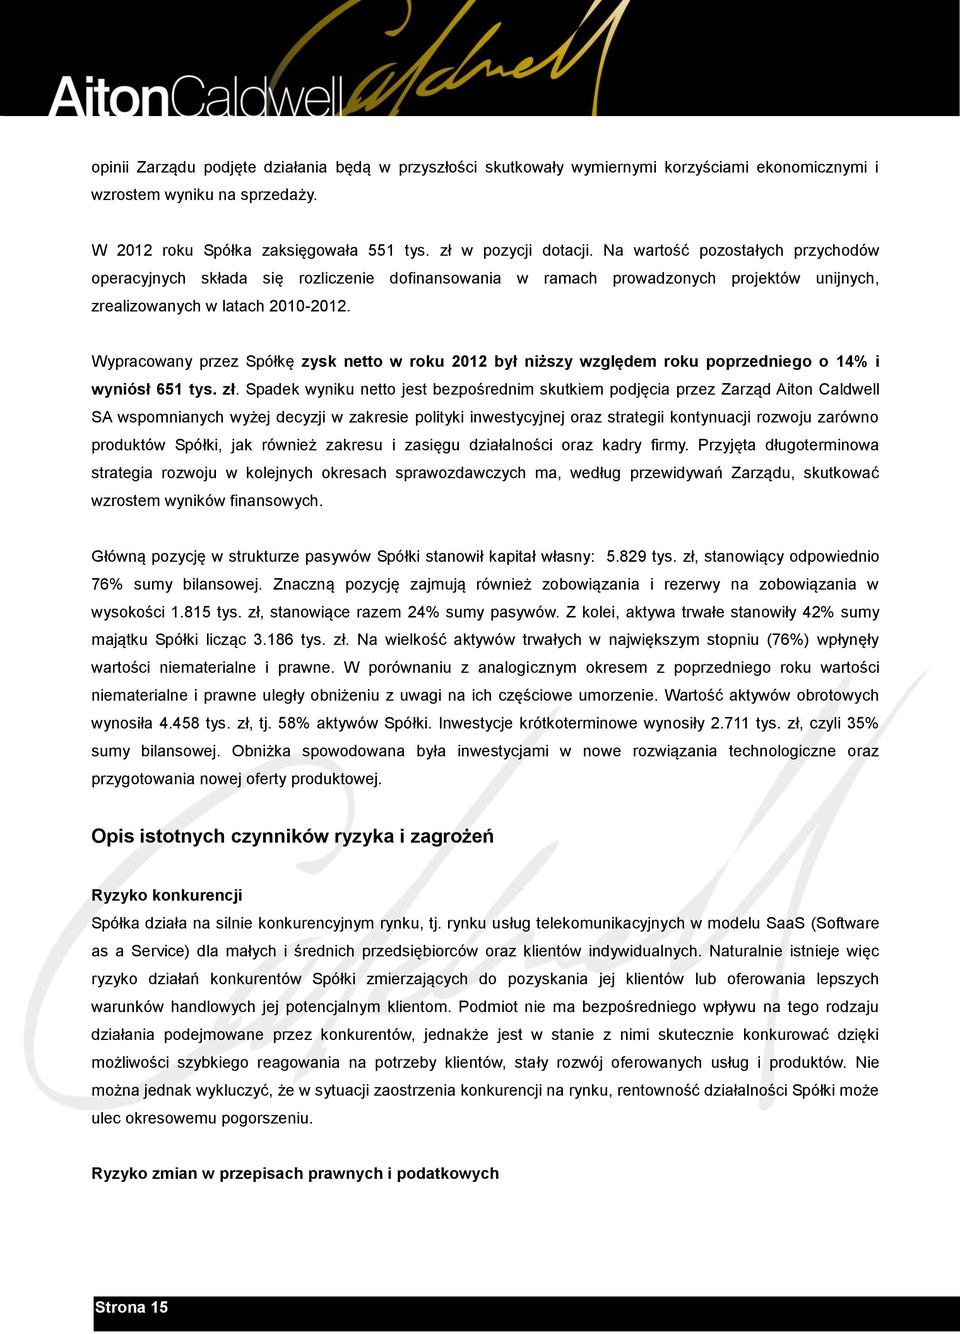 Wypracowany przez Spółkę zysk netto w roku 2012 był niższy względem roku poprzedniego o 14% i wyniósł 651 tys. zł.